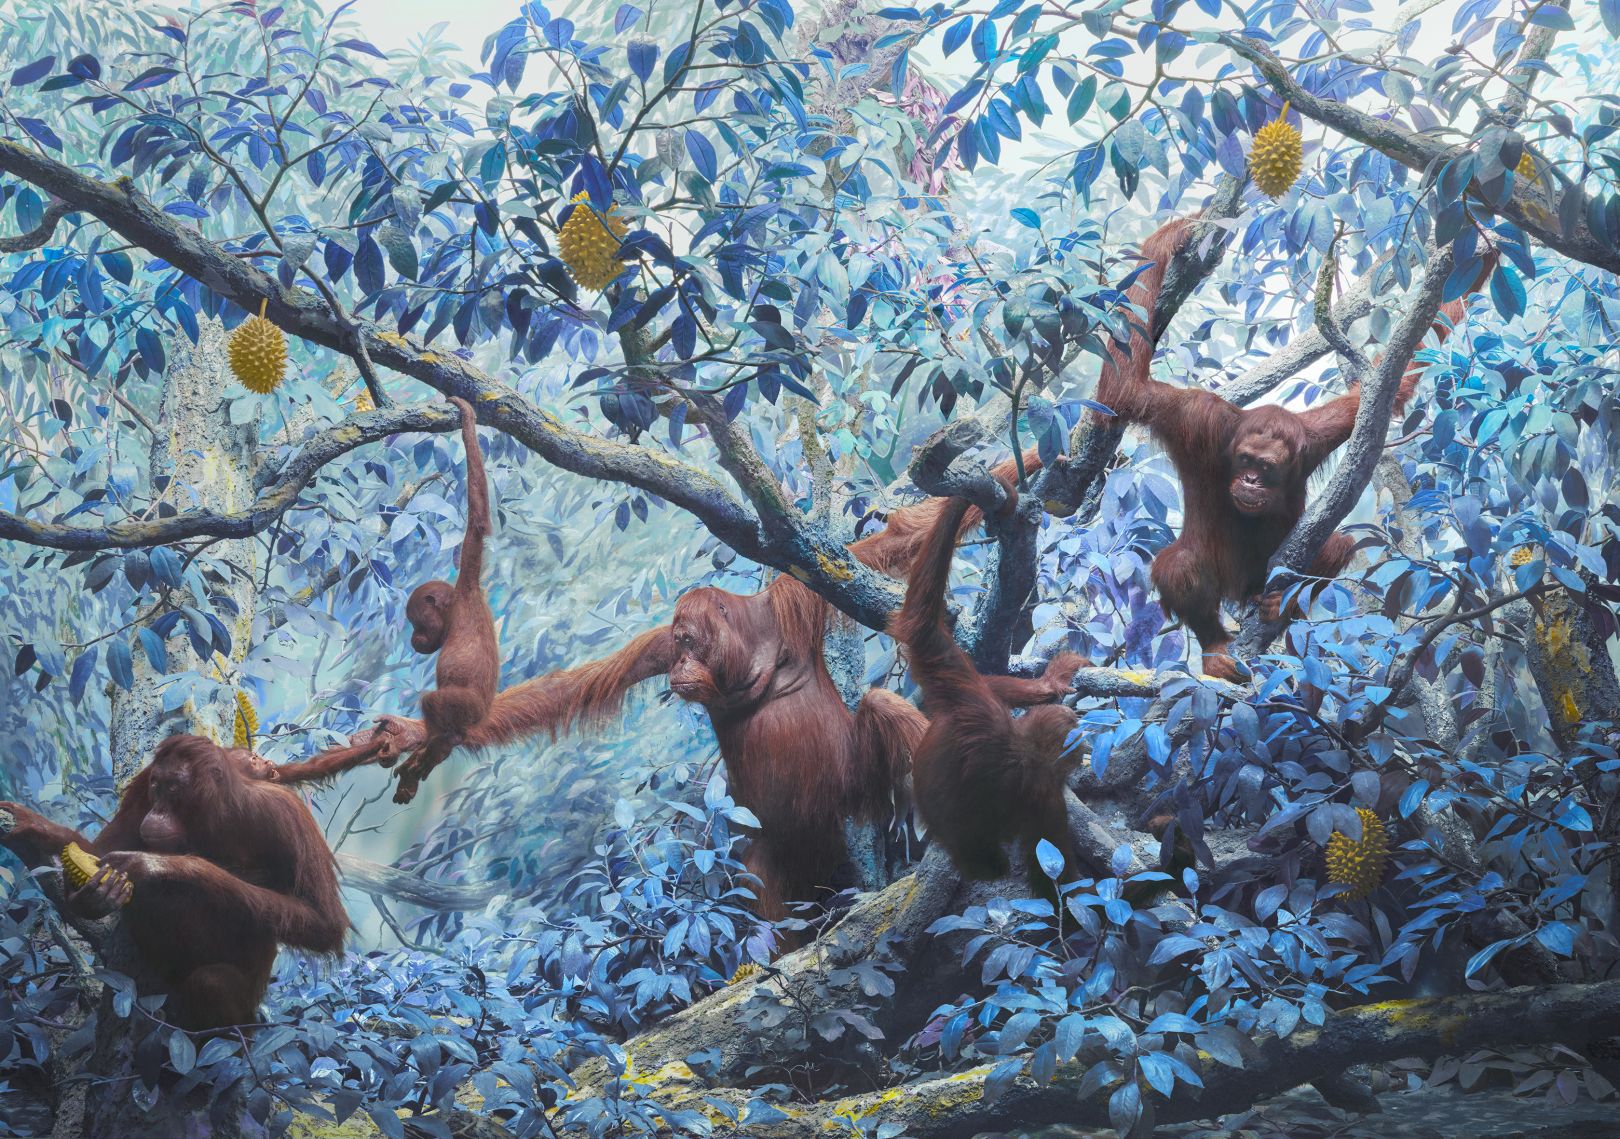 Сюрреалистические цифровые картины Джима Нотена (Jim Naughten) подчеркивают дикую природу